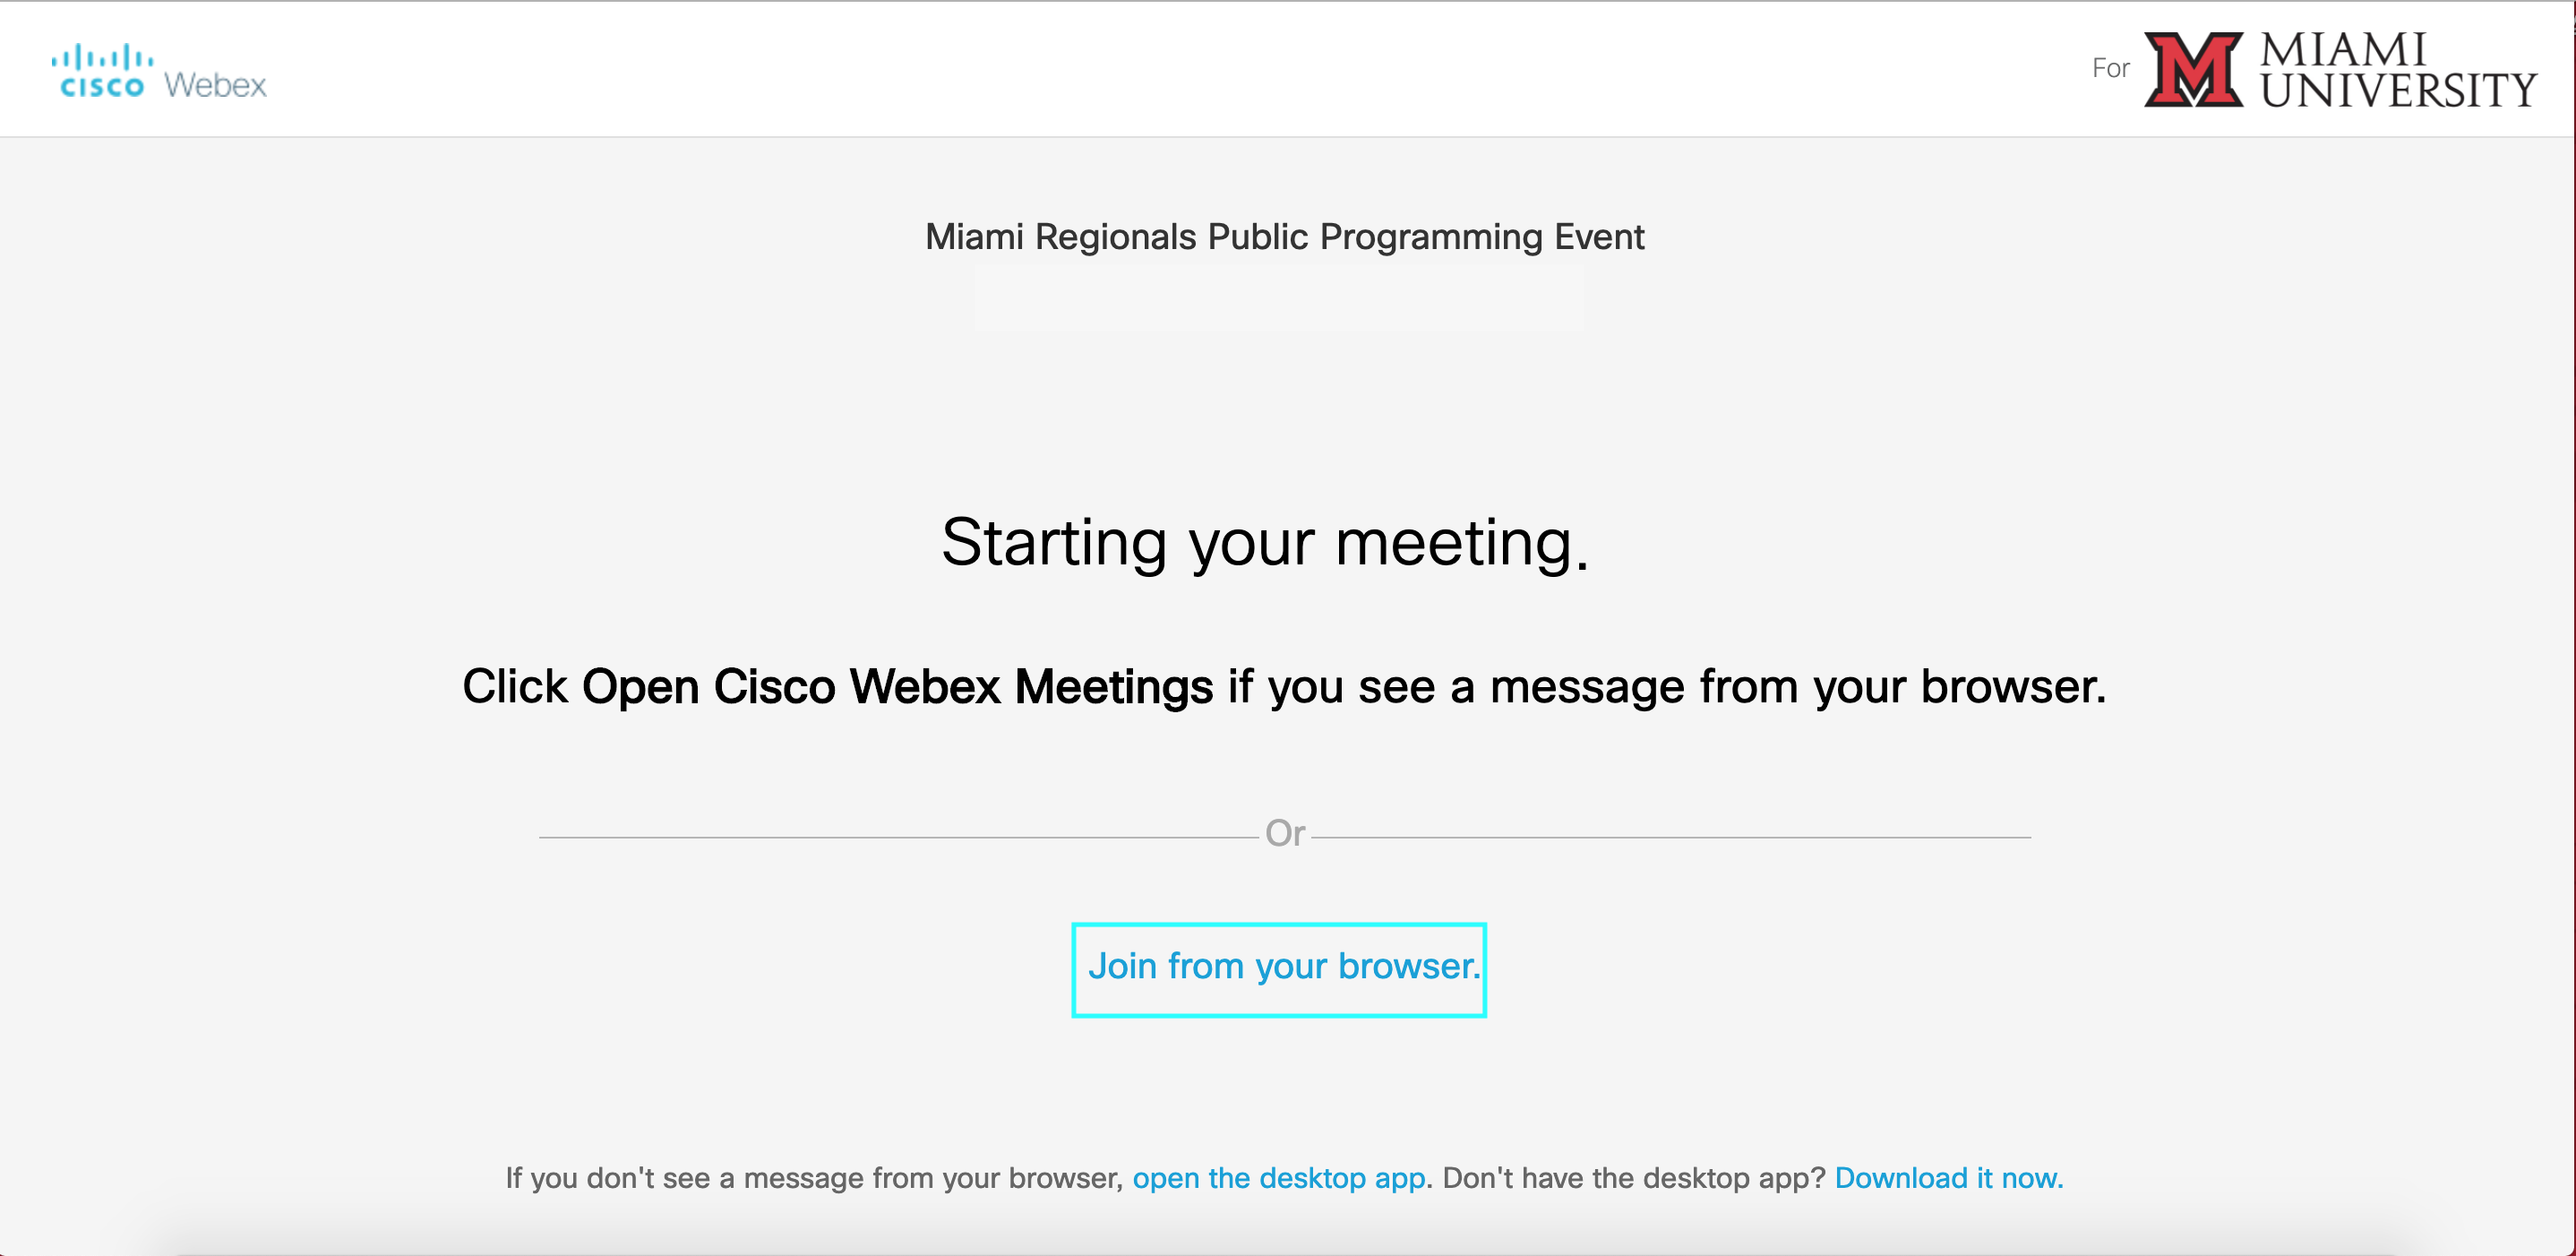 Starting meeting image screen.